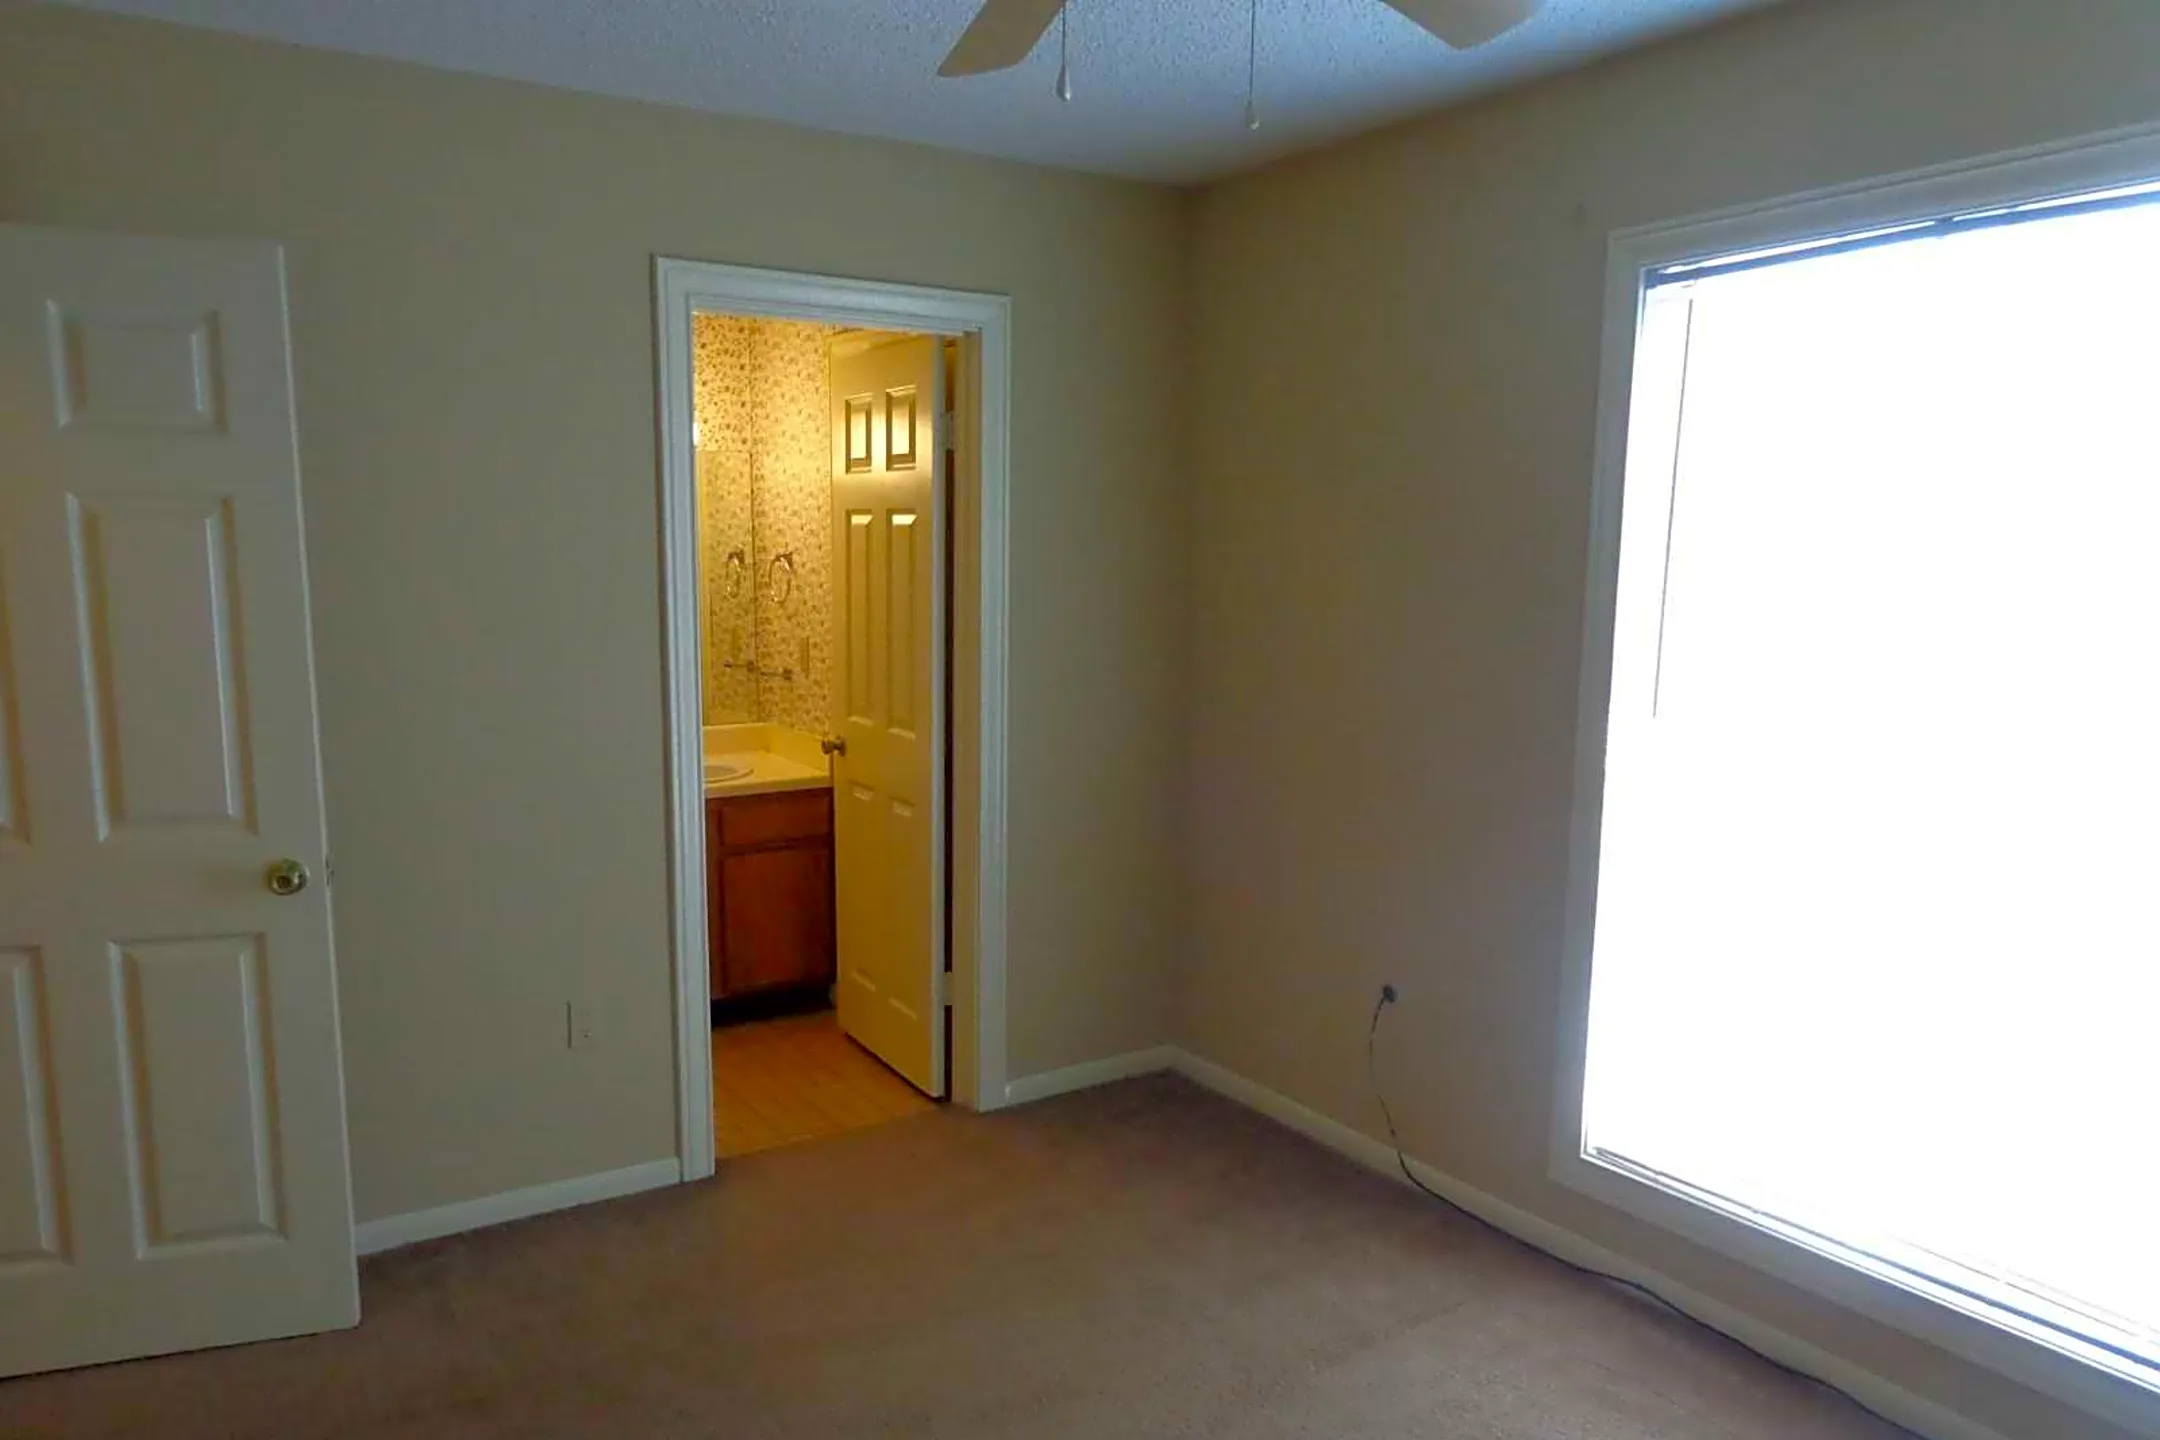 Bedroom - Garry Lewis Properties - Baton Rouge, LA